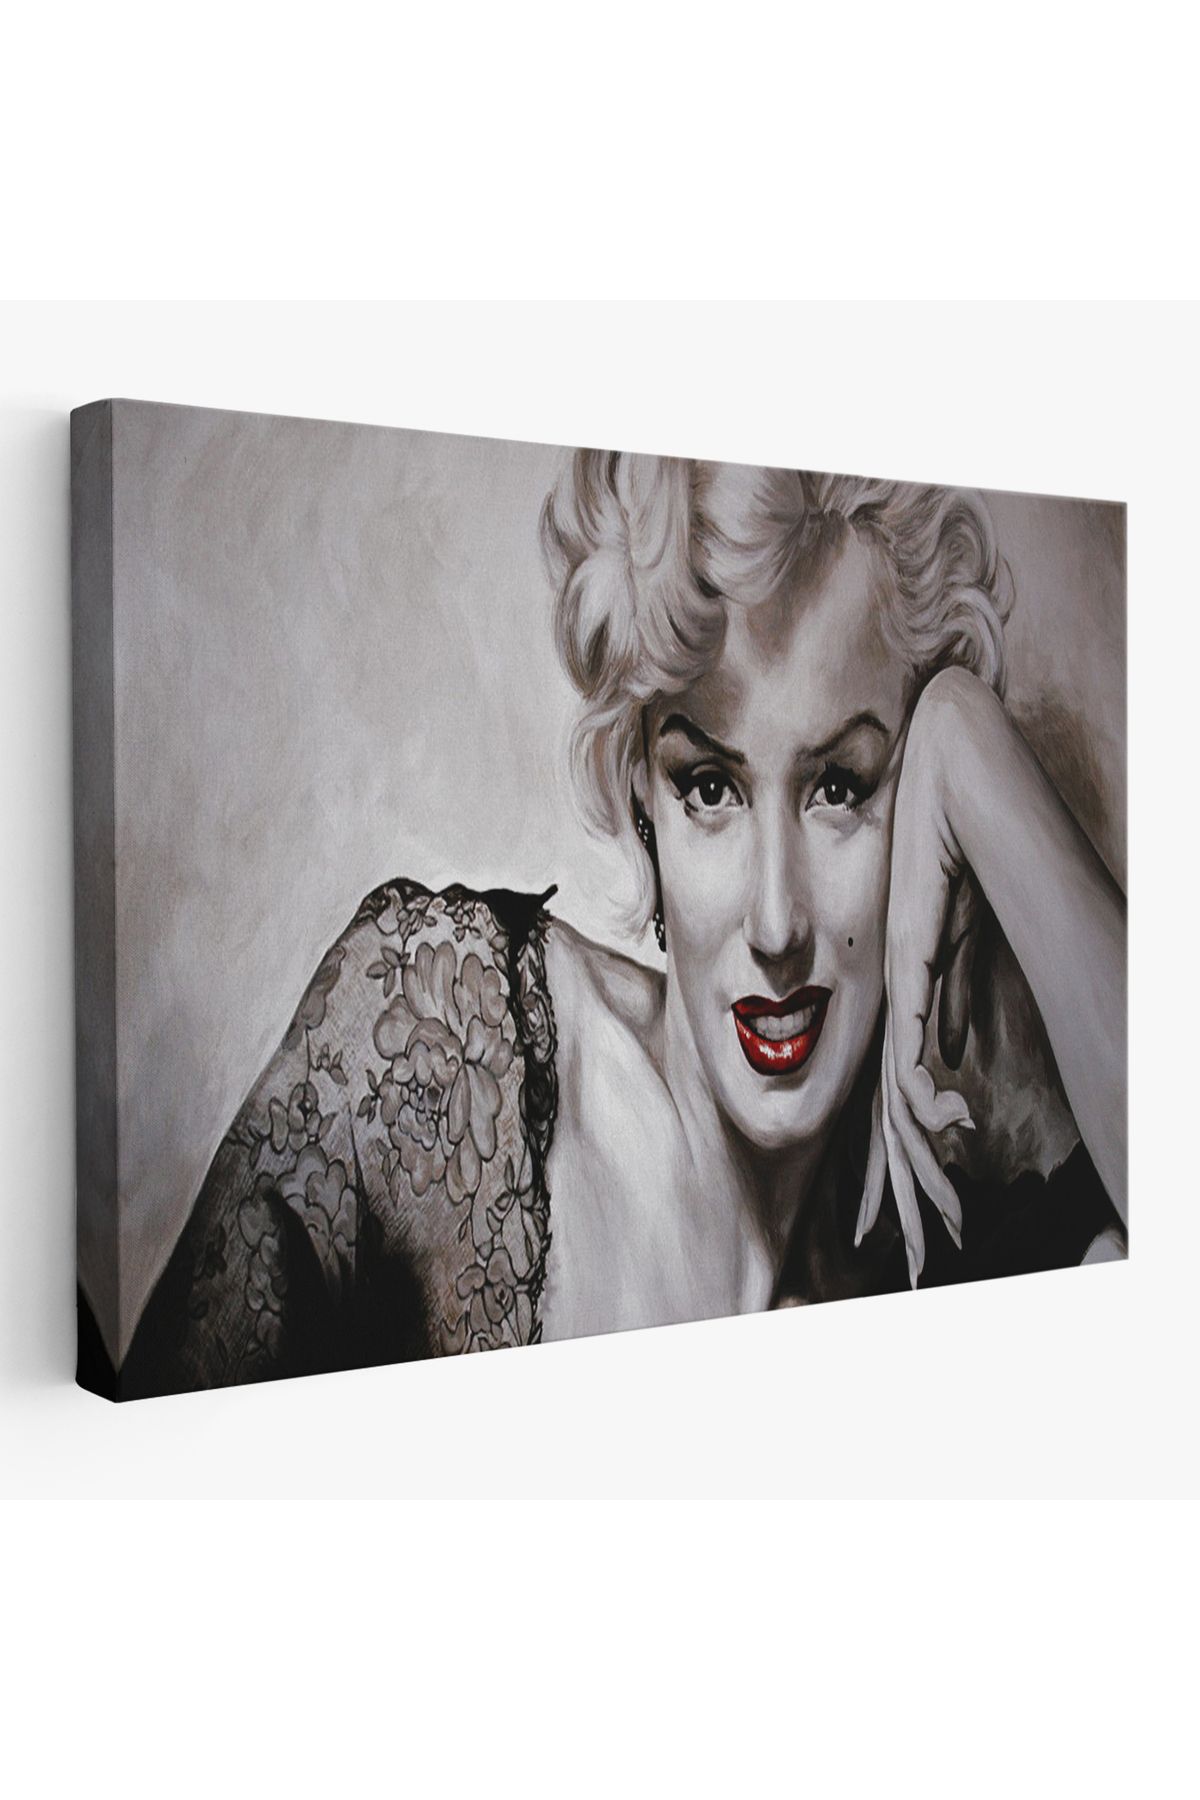 Genel Markalar BOXING065 Marilyn Monroe Dekoratif Duvar Tablosu-6610